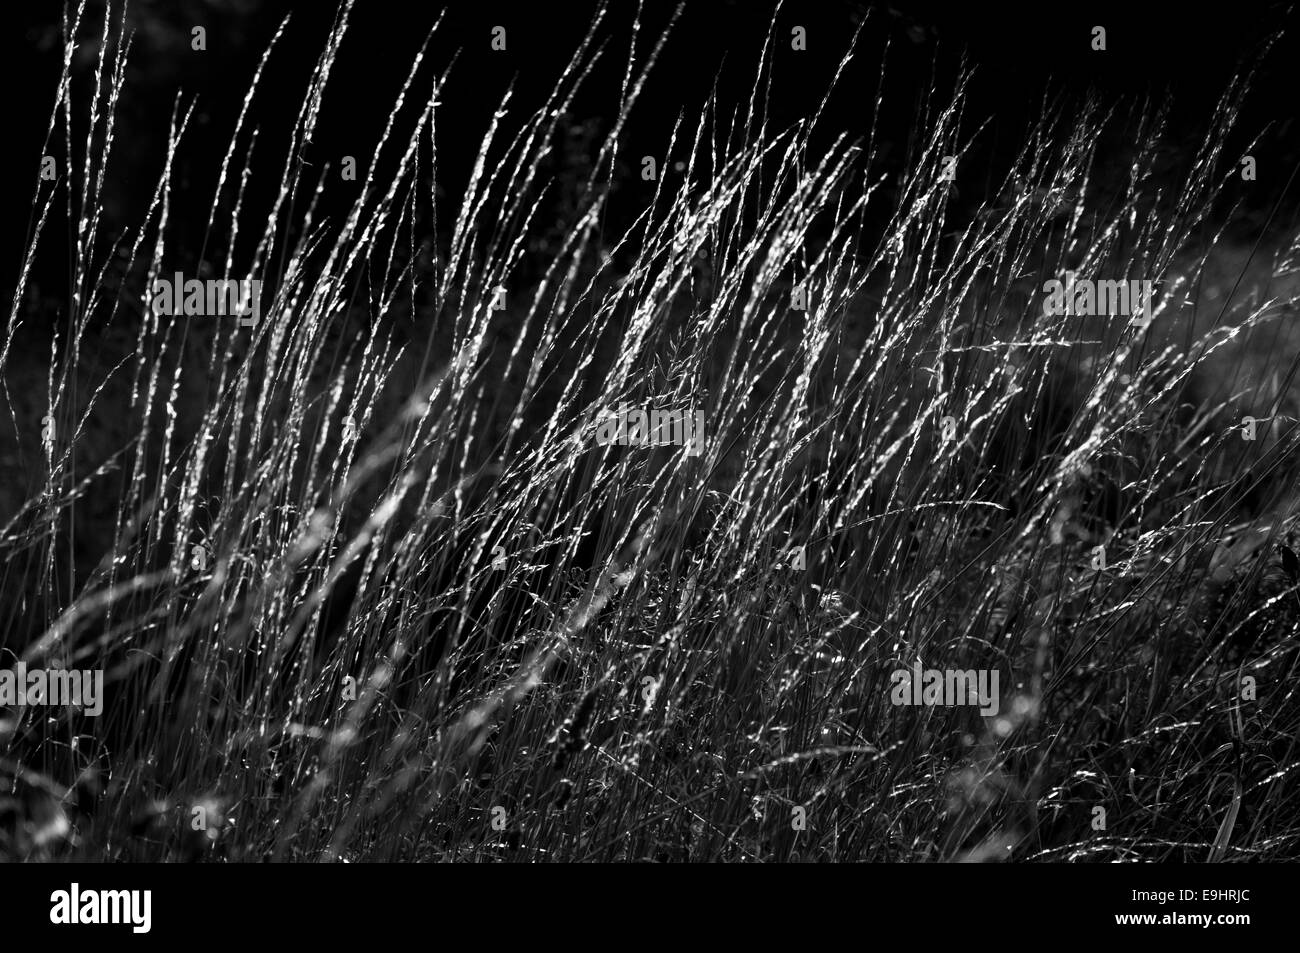 Auszug aus Moorland Gräser, hinterleuchtet mit dunklem Hintergrund. Feine Linien. In schwarz / weiß konvertiert. Stockfoto